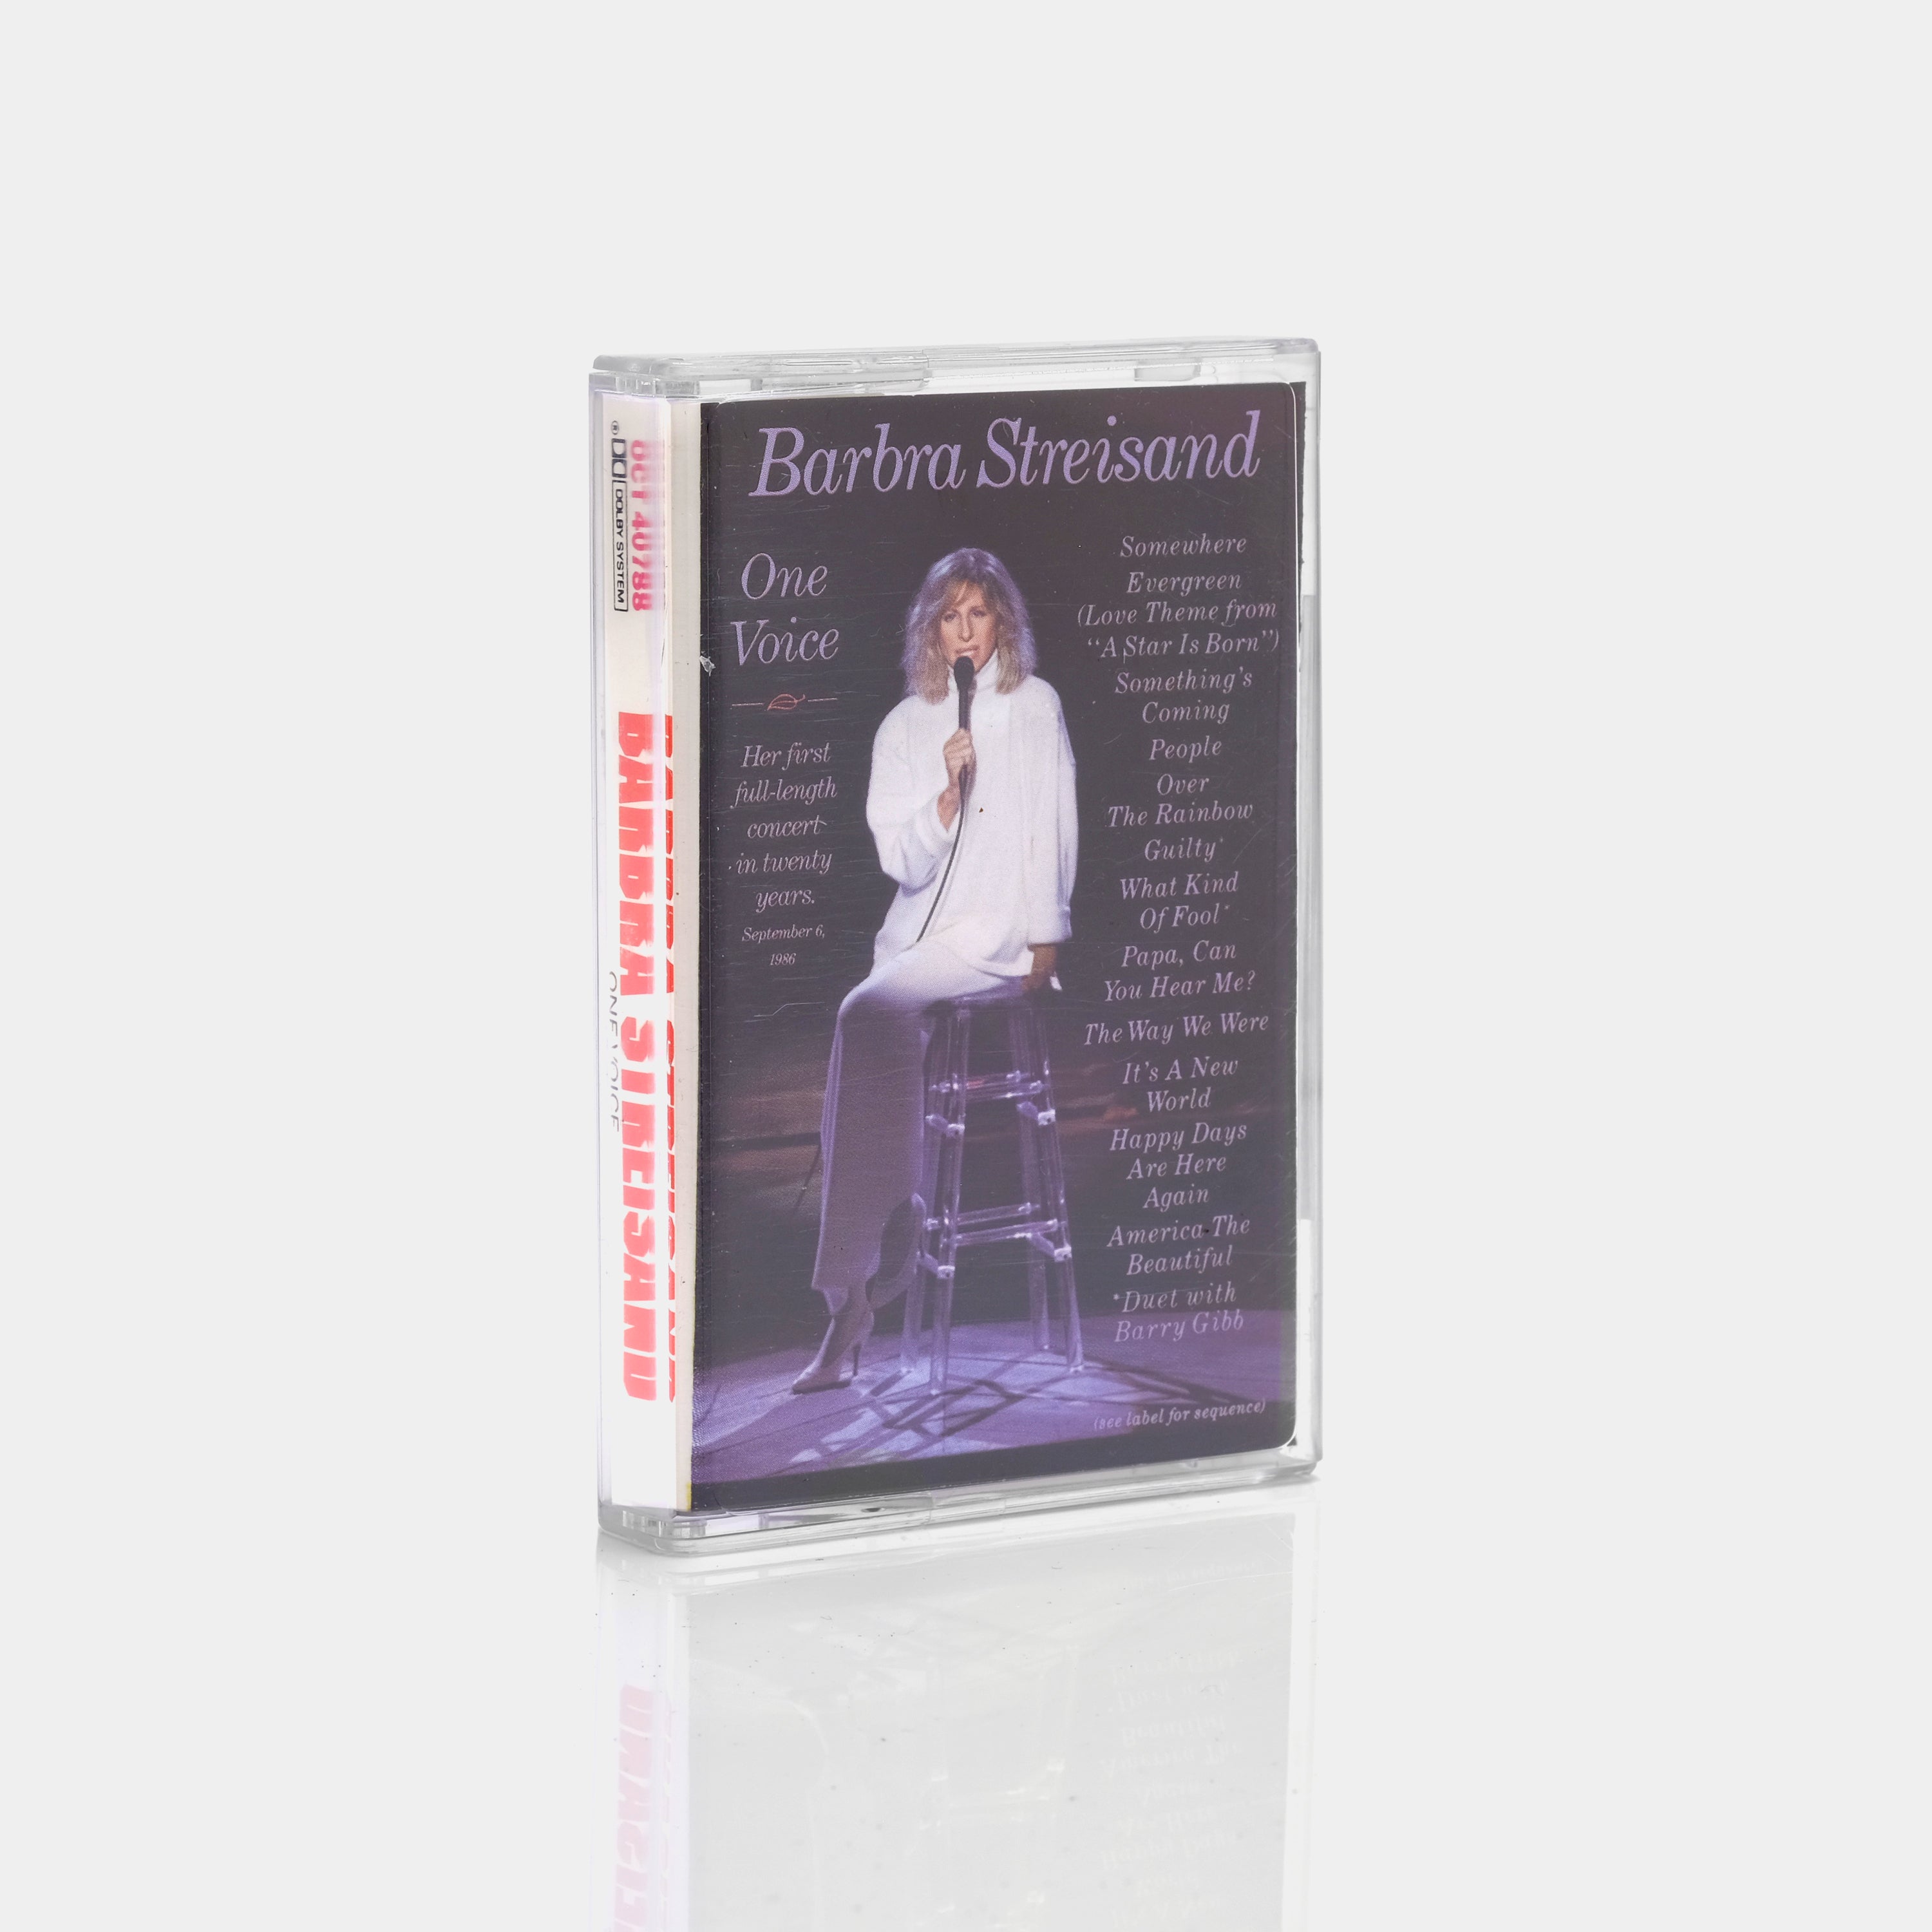 Barbra Streisand - One Voice Cassette Tape